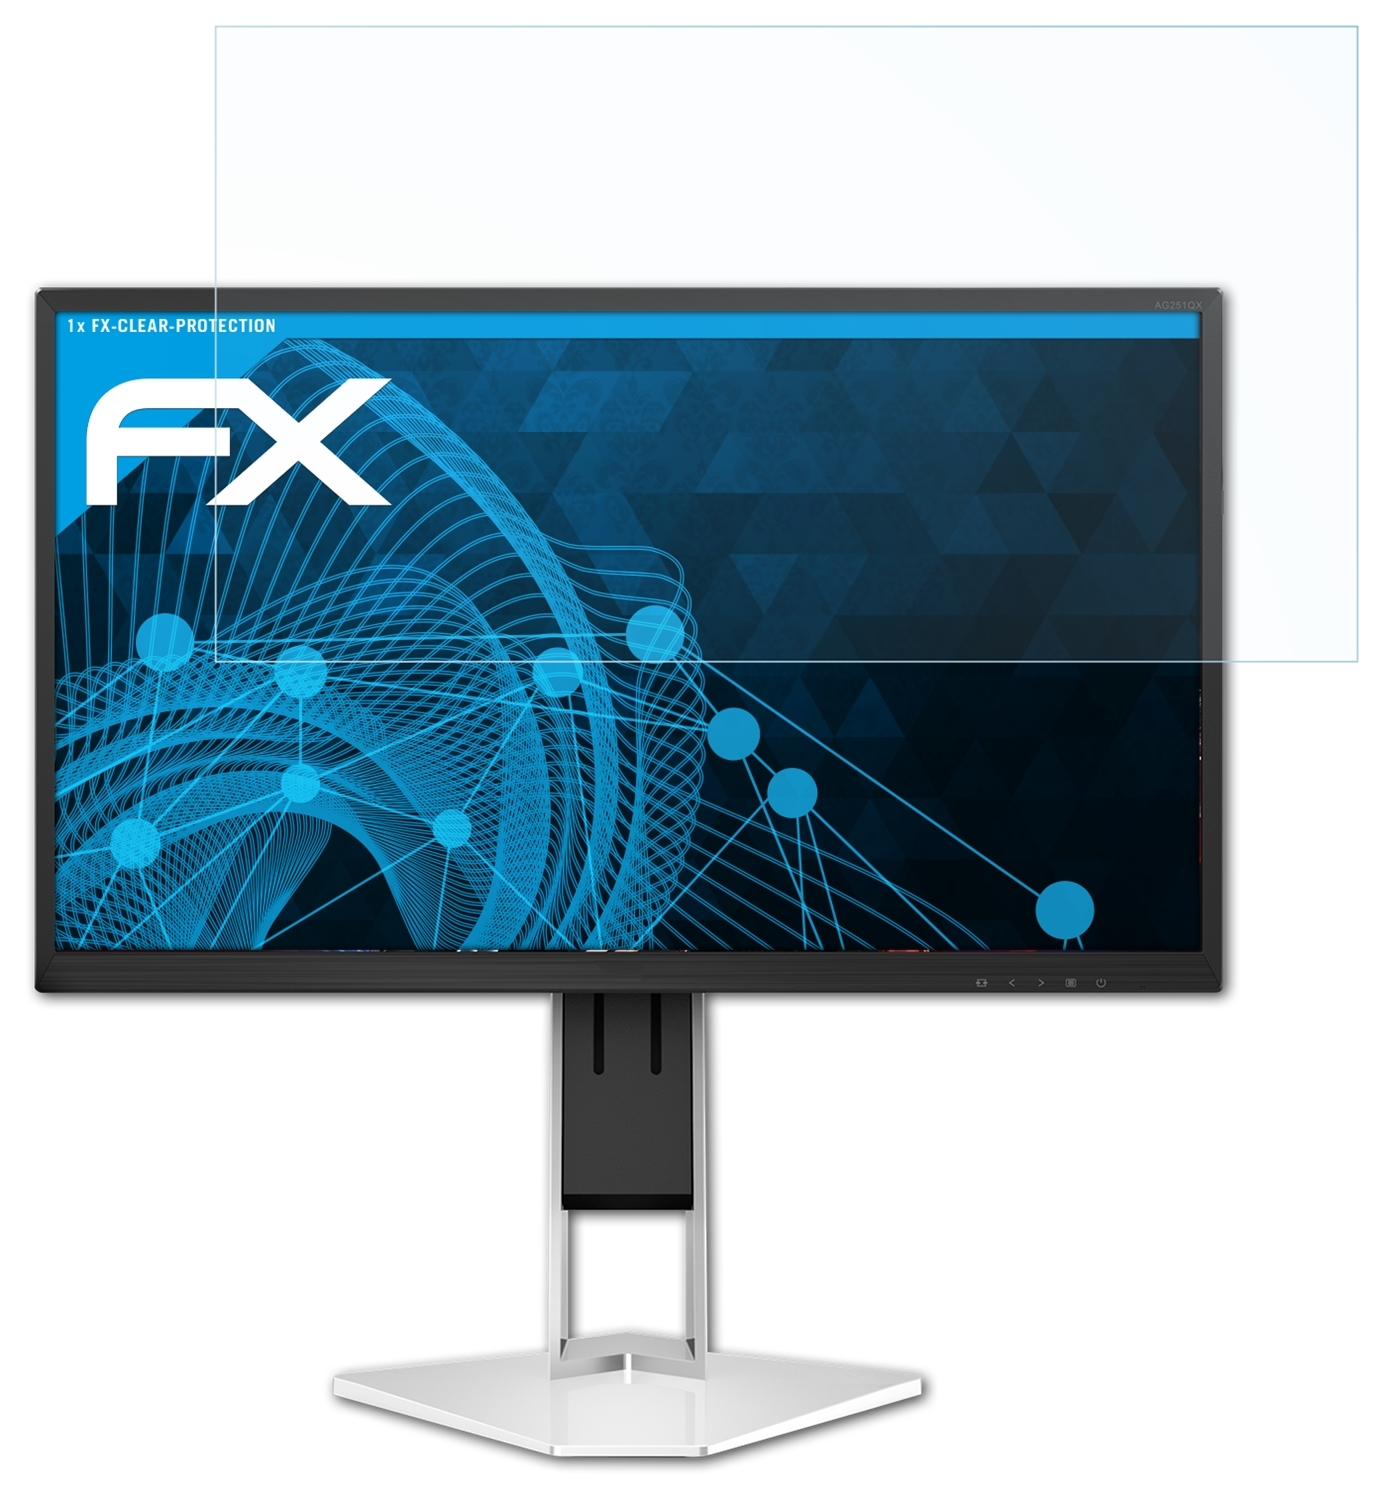 ATFOLIX FX-Clear Displayschutz(für AOC AG251FZ2E)